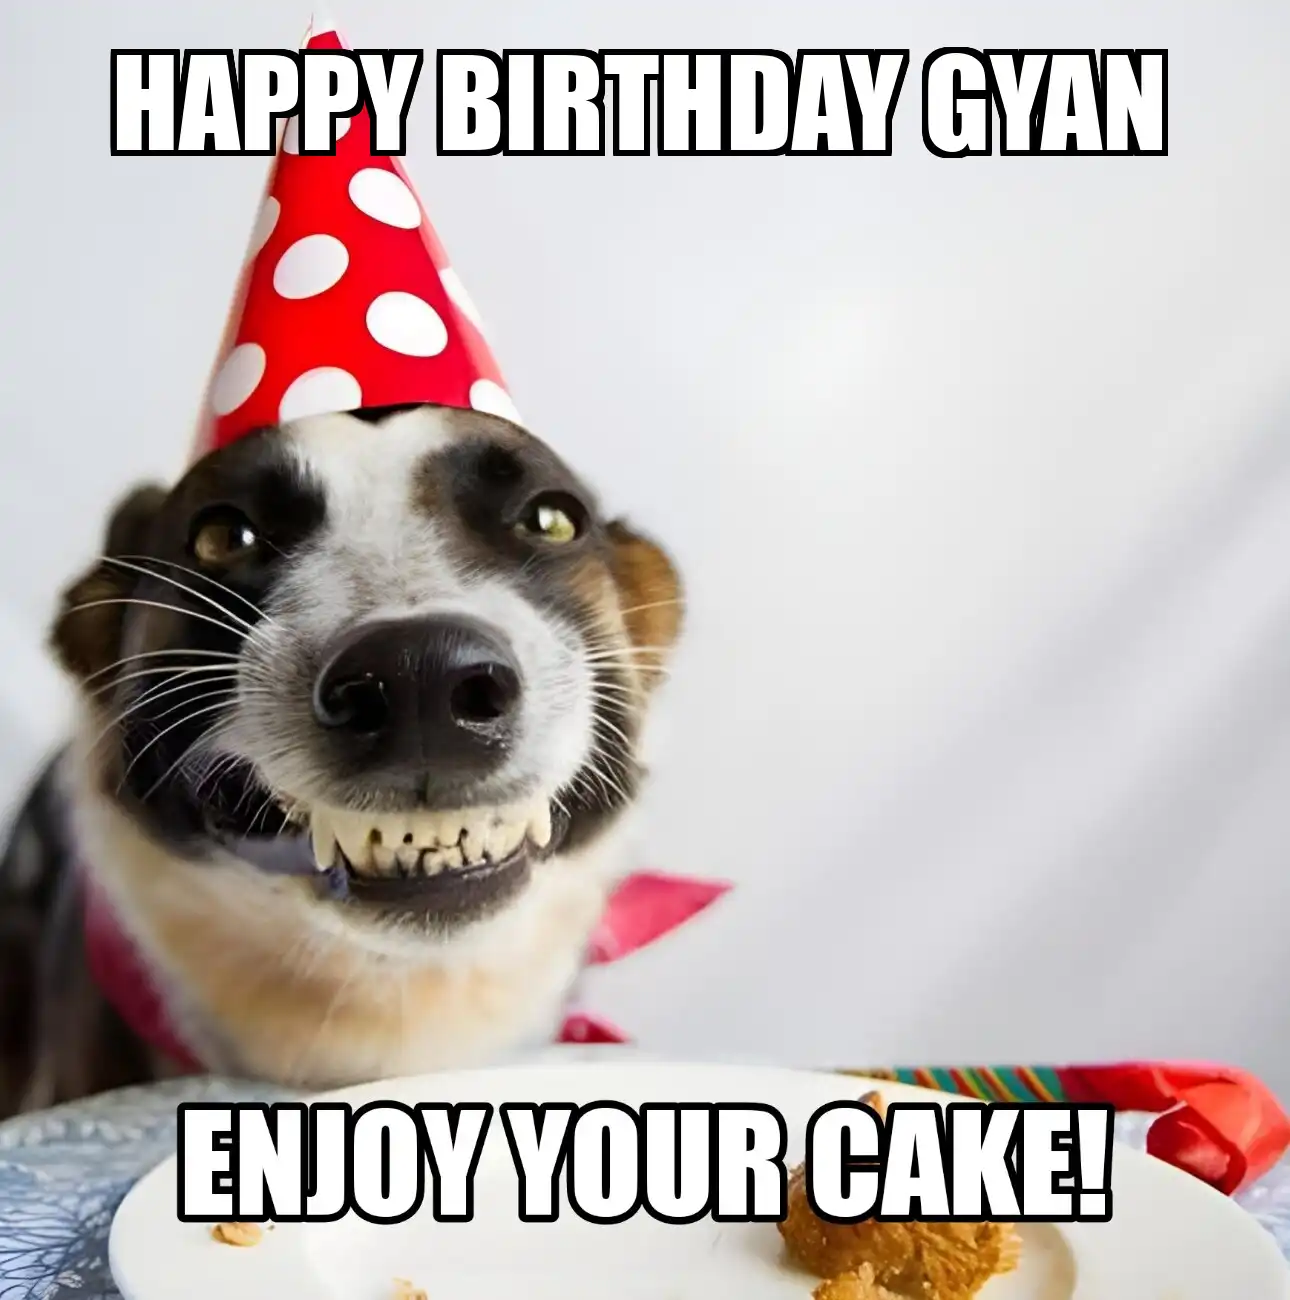 Happy Birthday Gyan Enjoy Your Cake Dog Meme